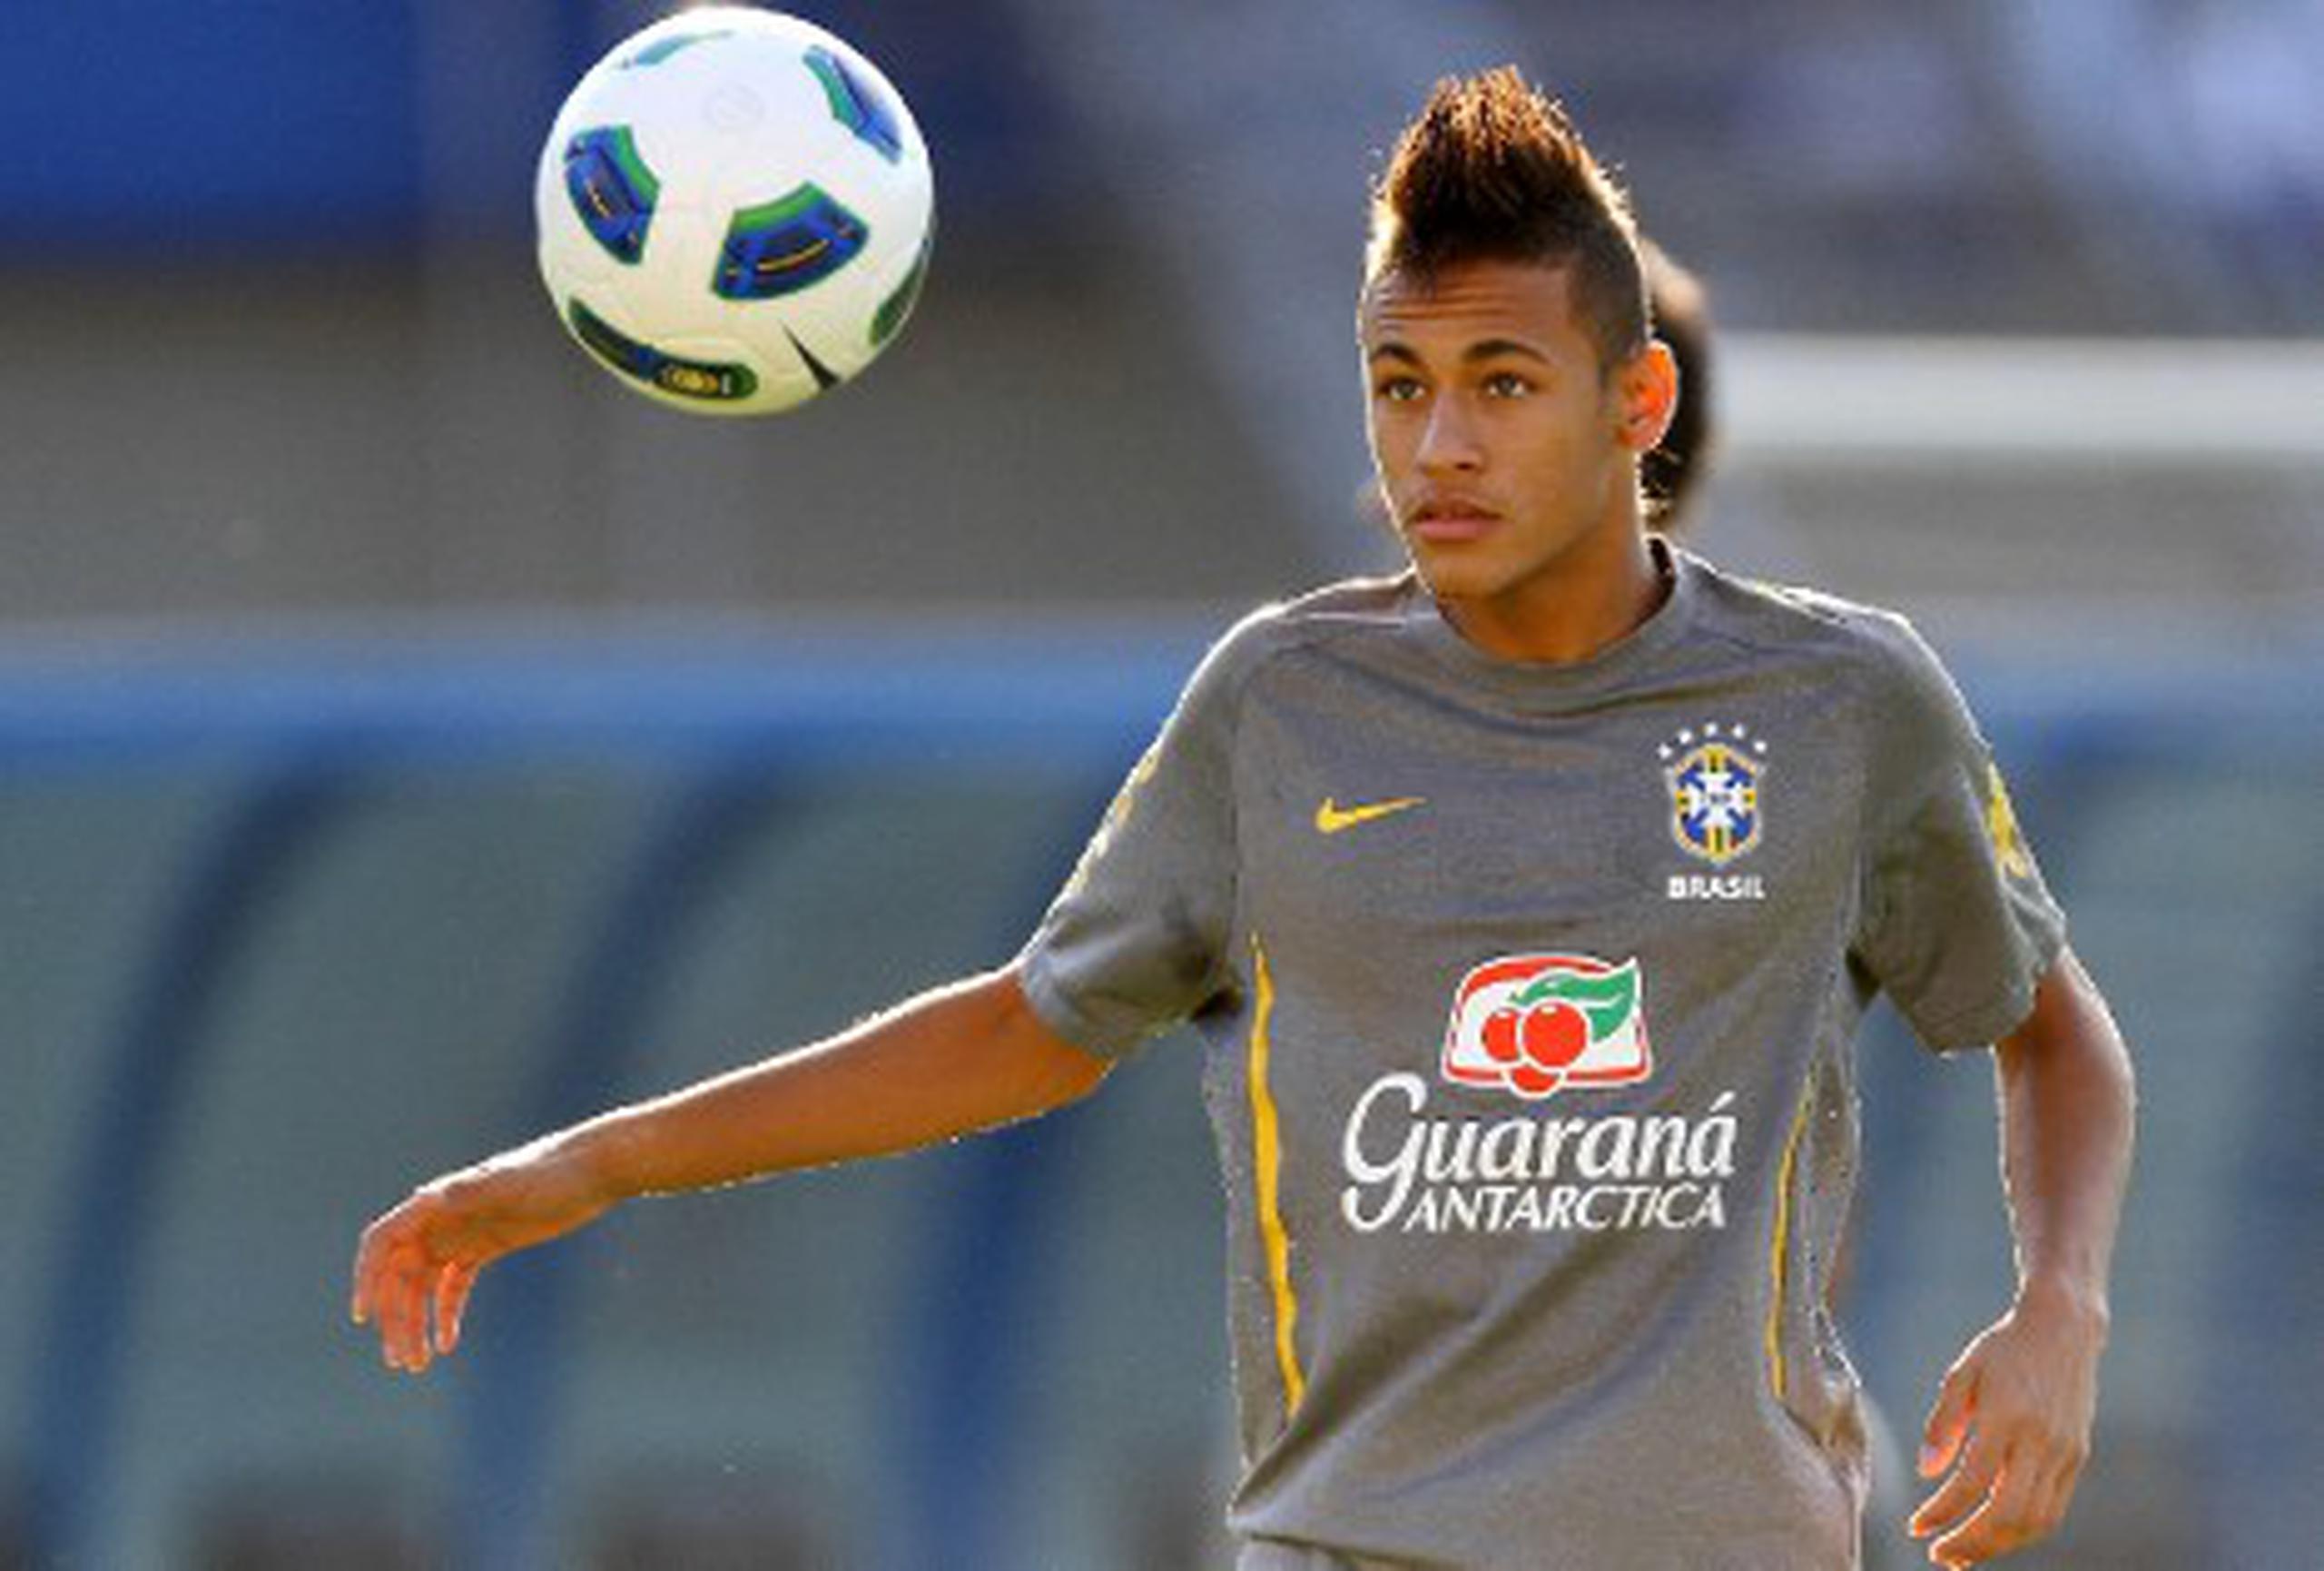 "El momento va a llegar, porque jugar en Europa es un sueño que tengo desde niño, aunque hoy no me veo jugando en otro equipo" que no sea el Santos, declaró el joven Neymar. (Archivo)